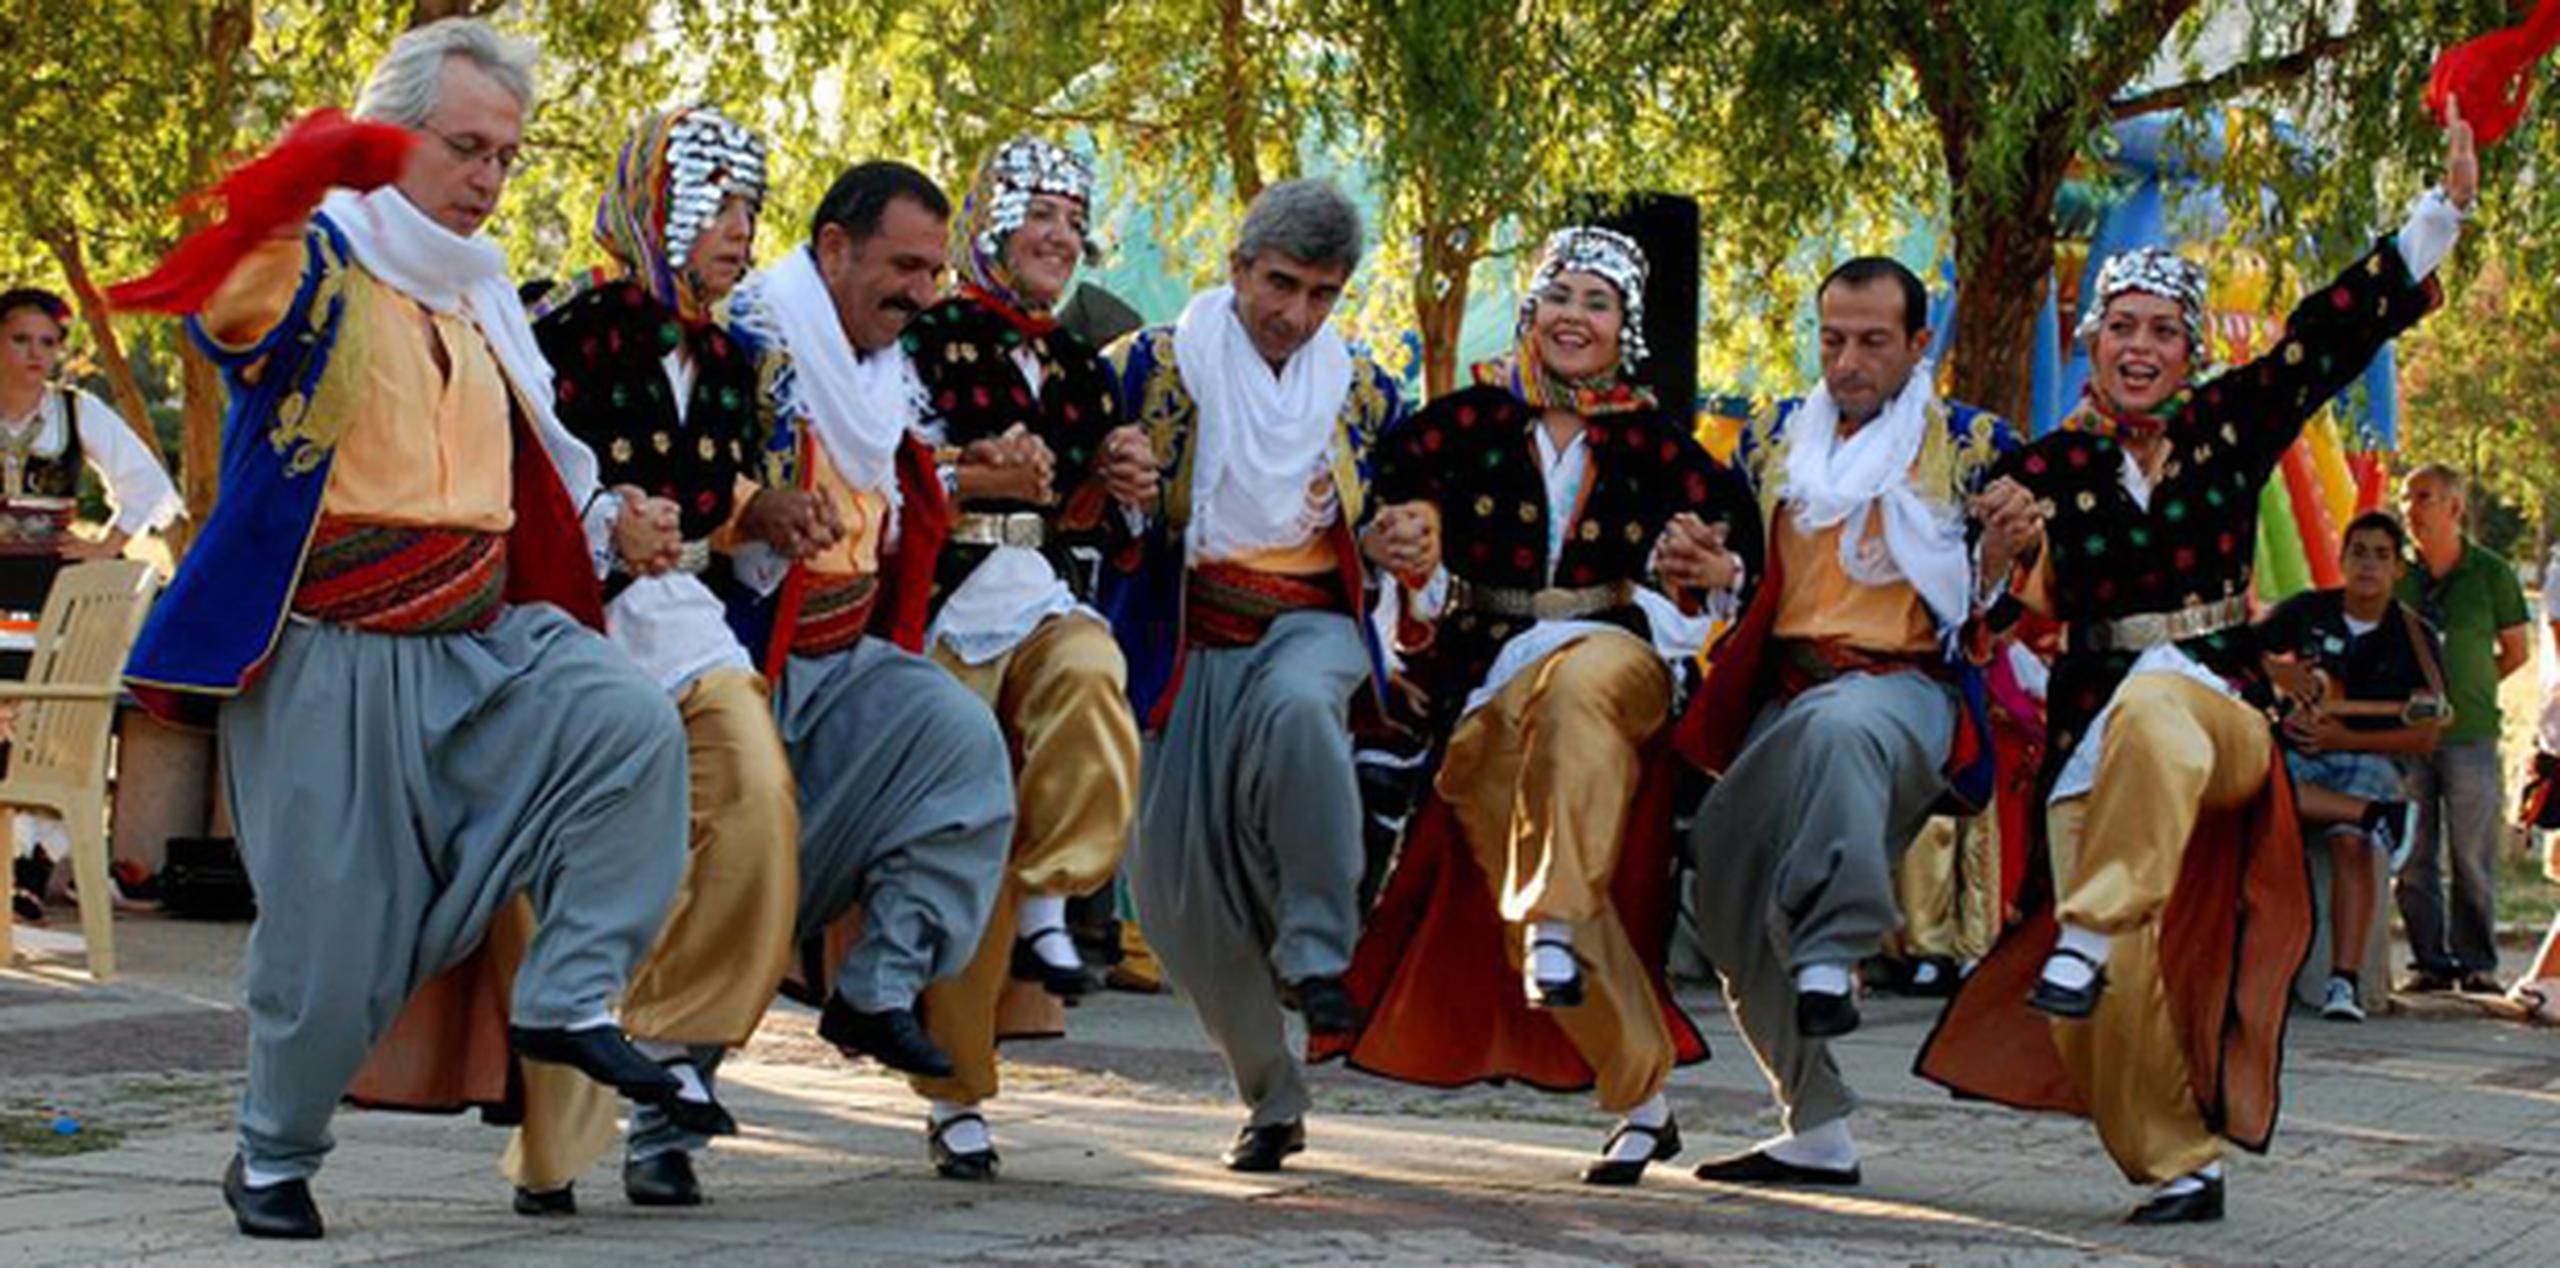 La oferta del festival incluye espectáculos de música y danzas tradicionales alrededor del mundo. (Suministrada)